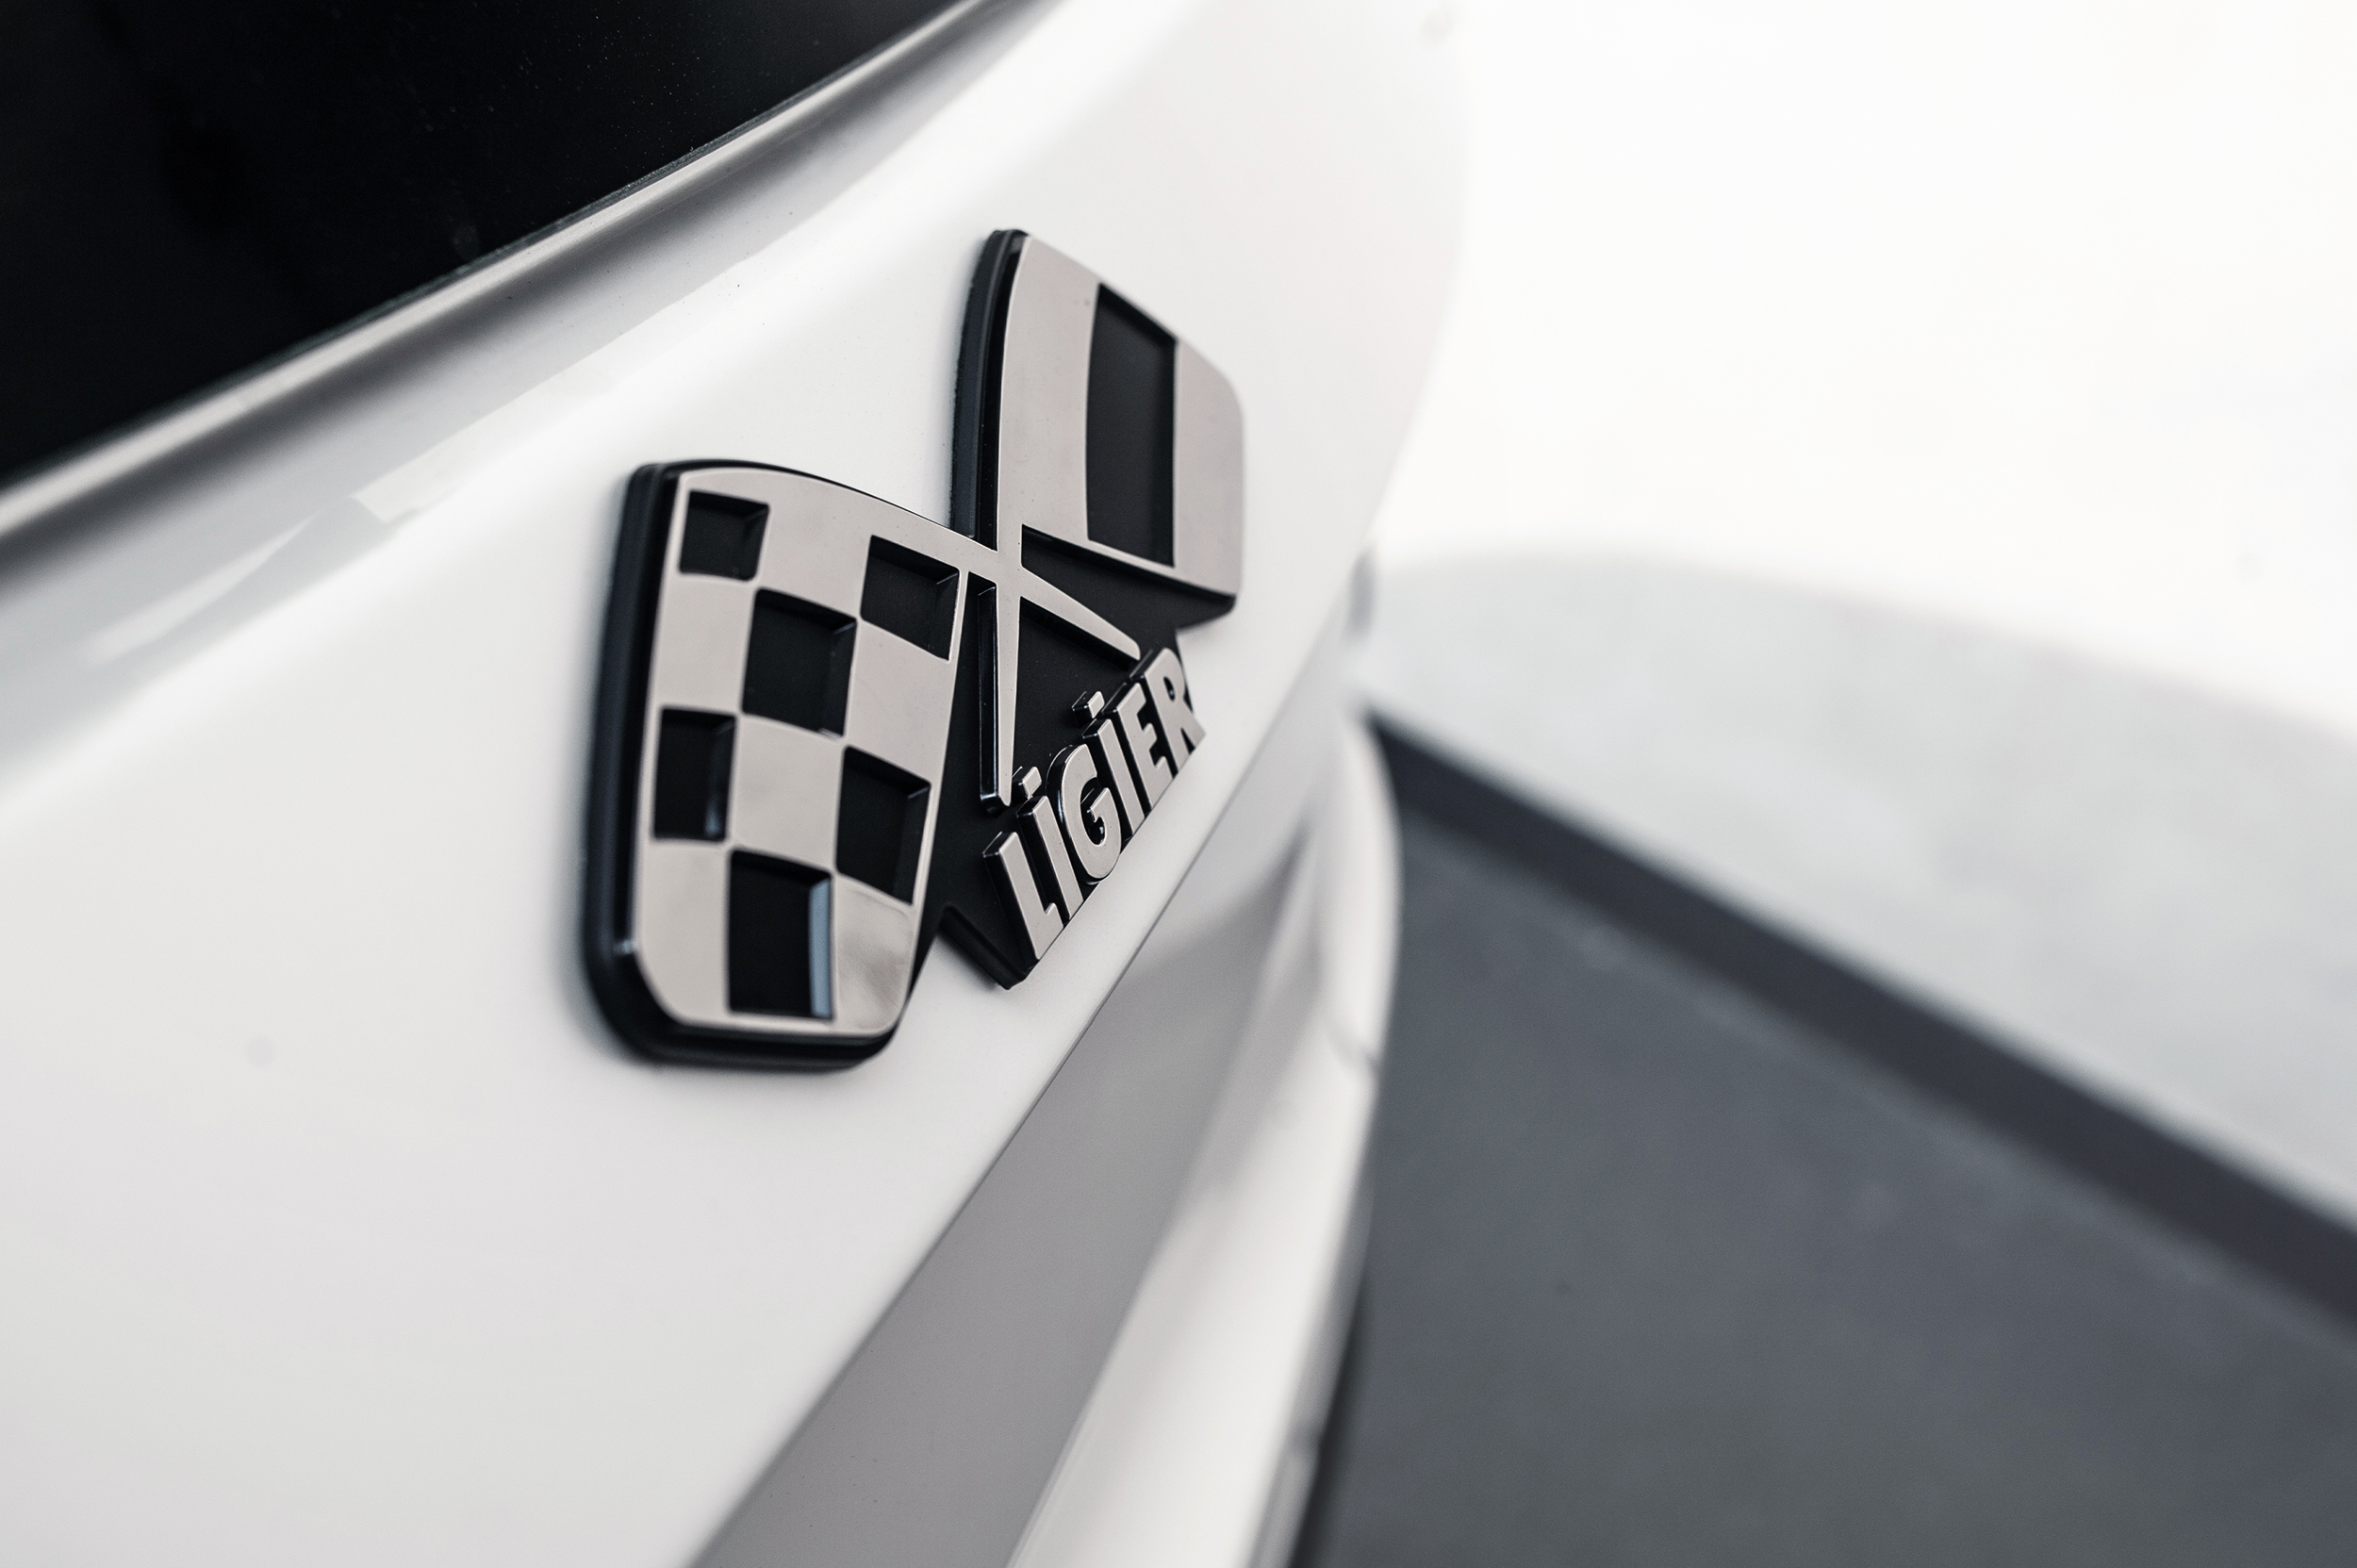 Ligier_logo_detail